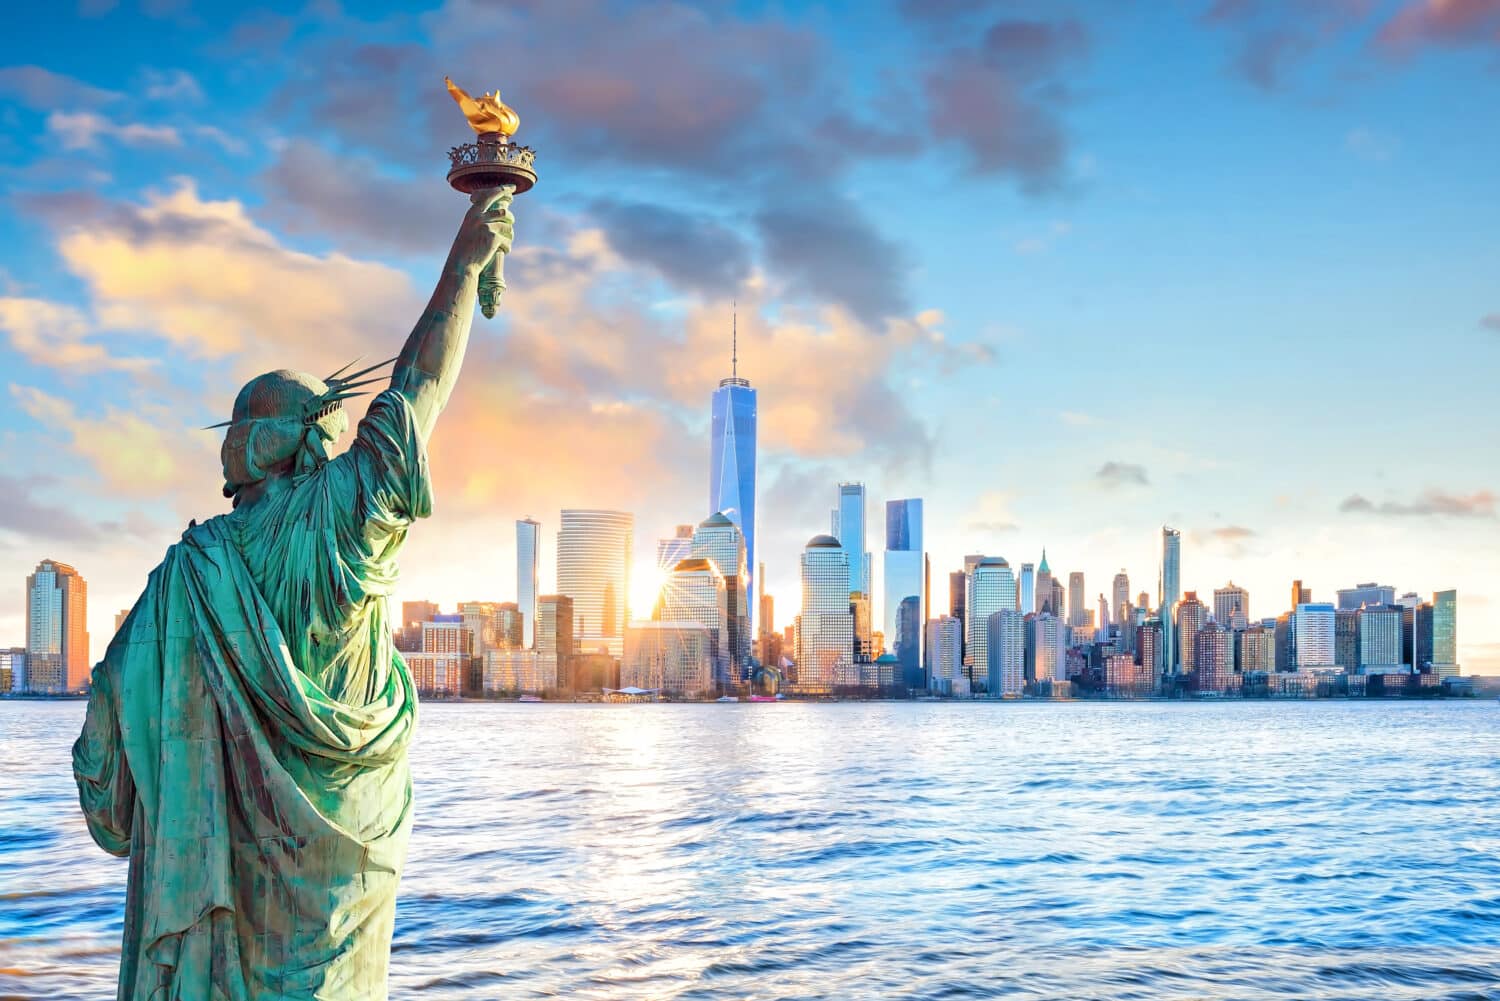 Monumento Nacional Estatua de la Libertad - Horizonte de la ciudad de nueva york